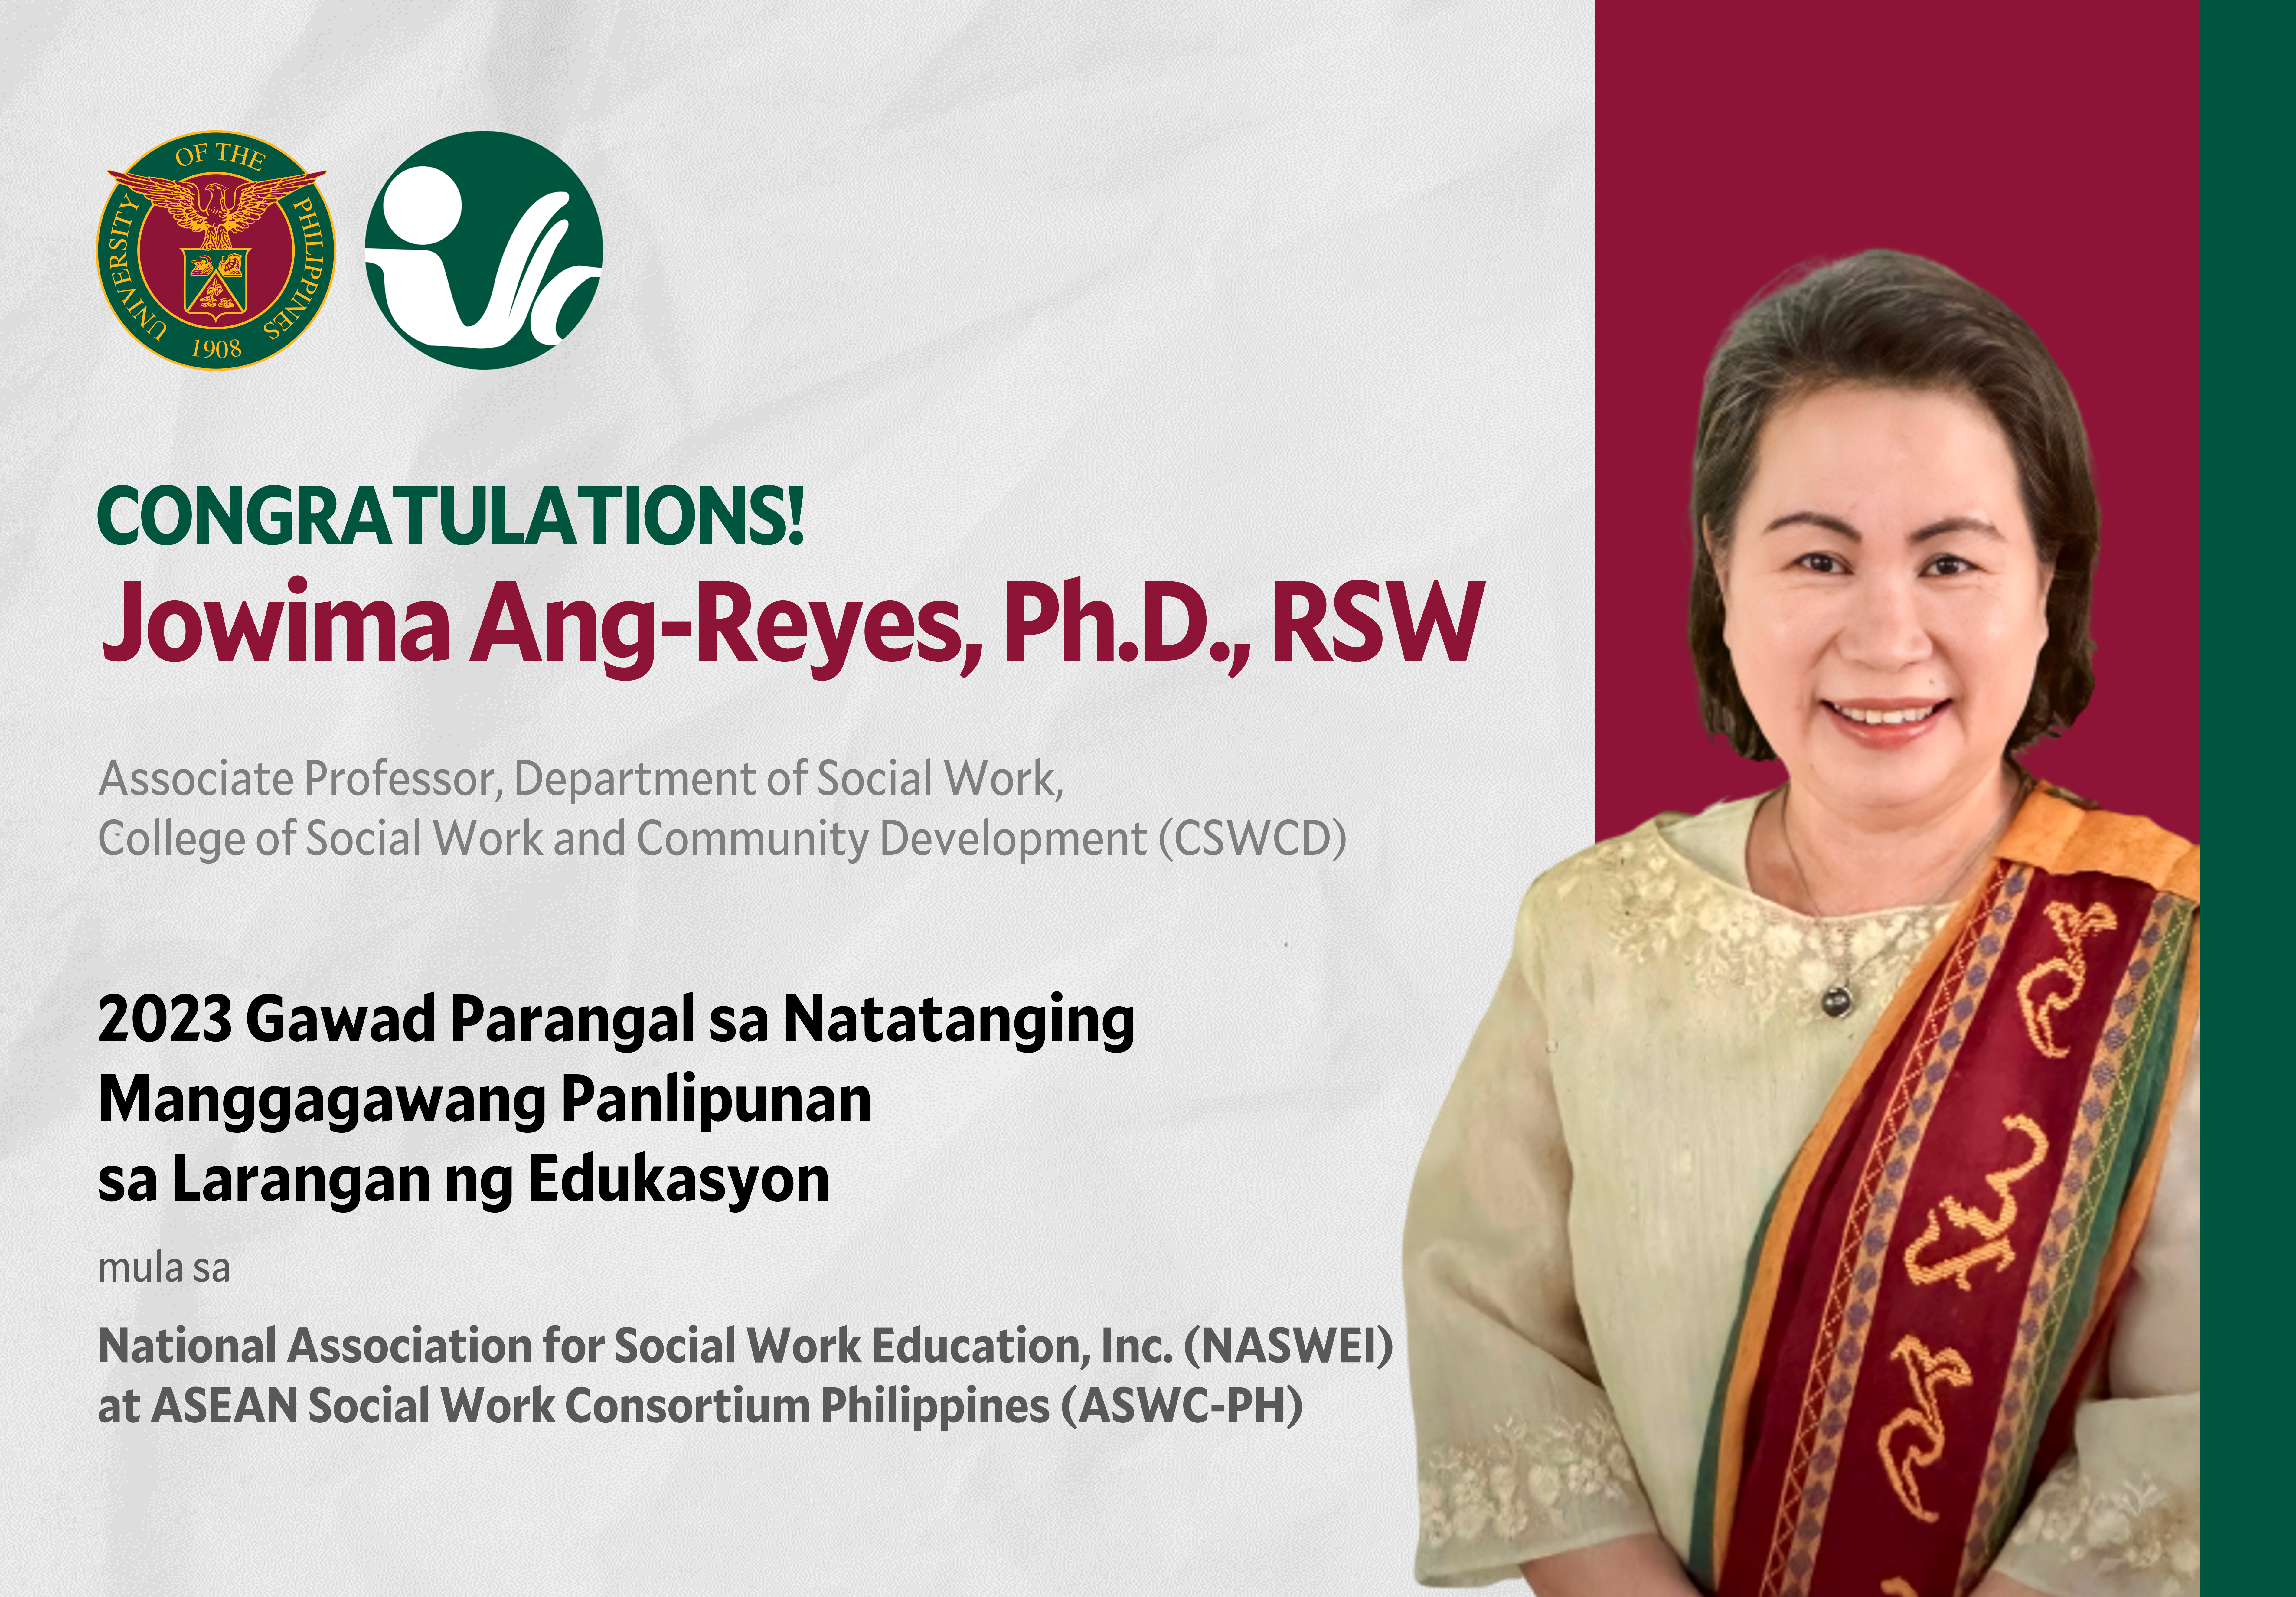 Pagbati kay Assoc. Prof. Jowima Ang-Reyes, PhD, RSW 2023 Gawad Parangal sa Natatanging Manggagawang Panlipunan sa Larangan ng Edukasyon